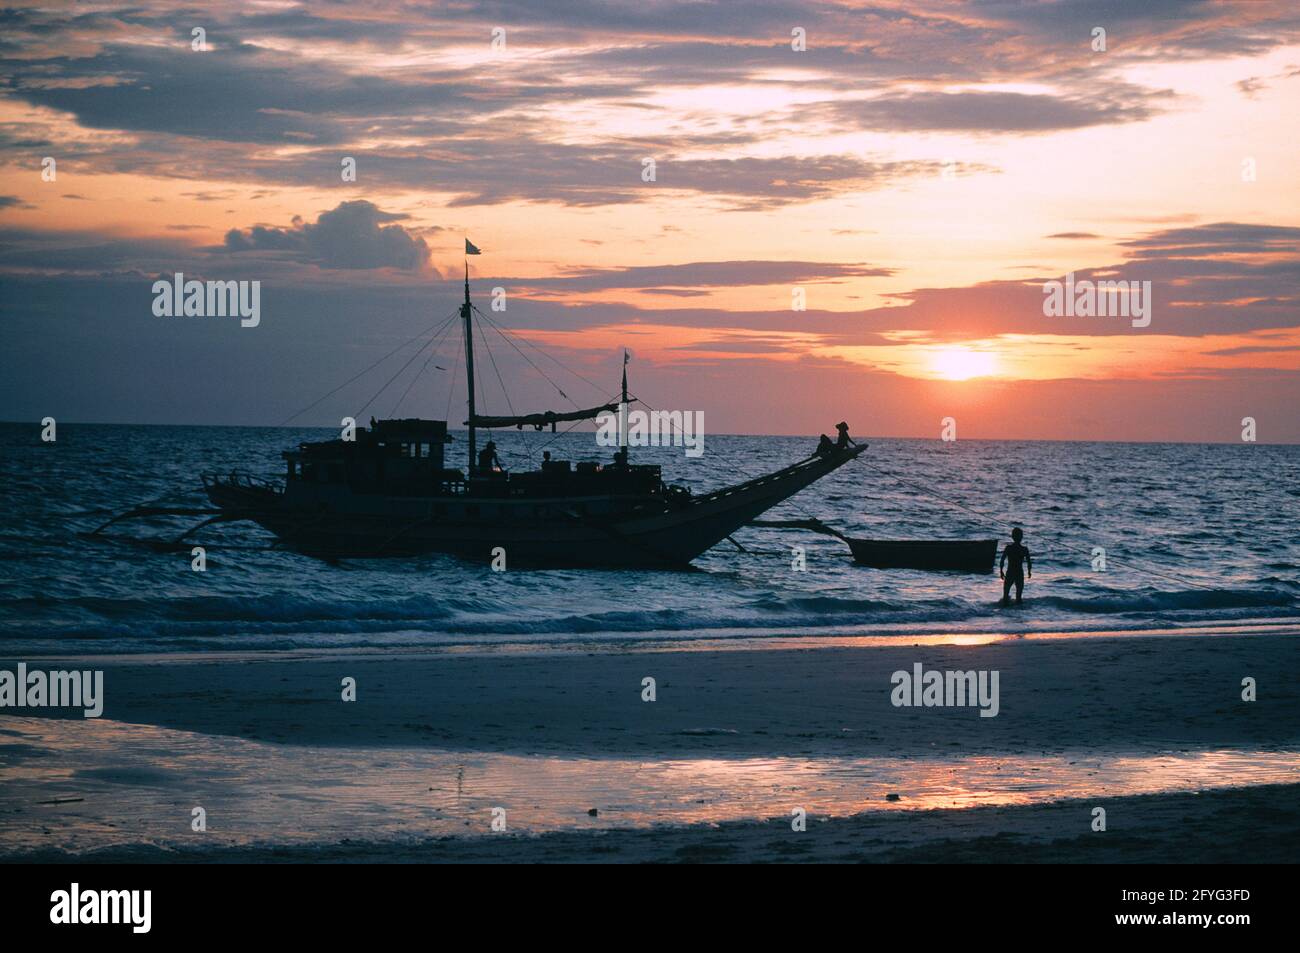 Philippines. Région de Luzon. Plage au coucher du soleil. Bateau de pêche et pêcheurs silhouettés. Banque D'Images